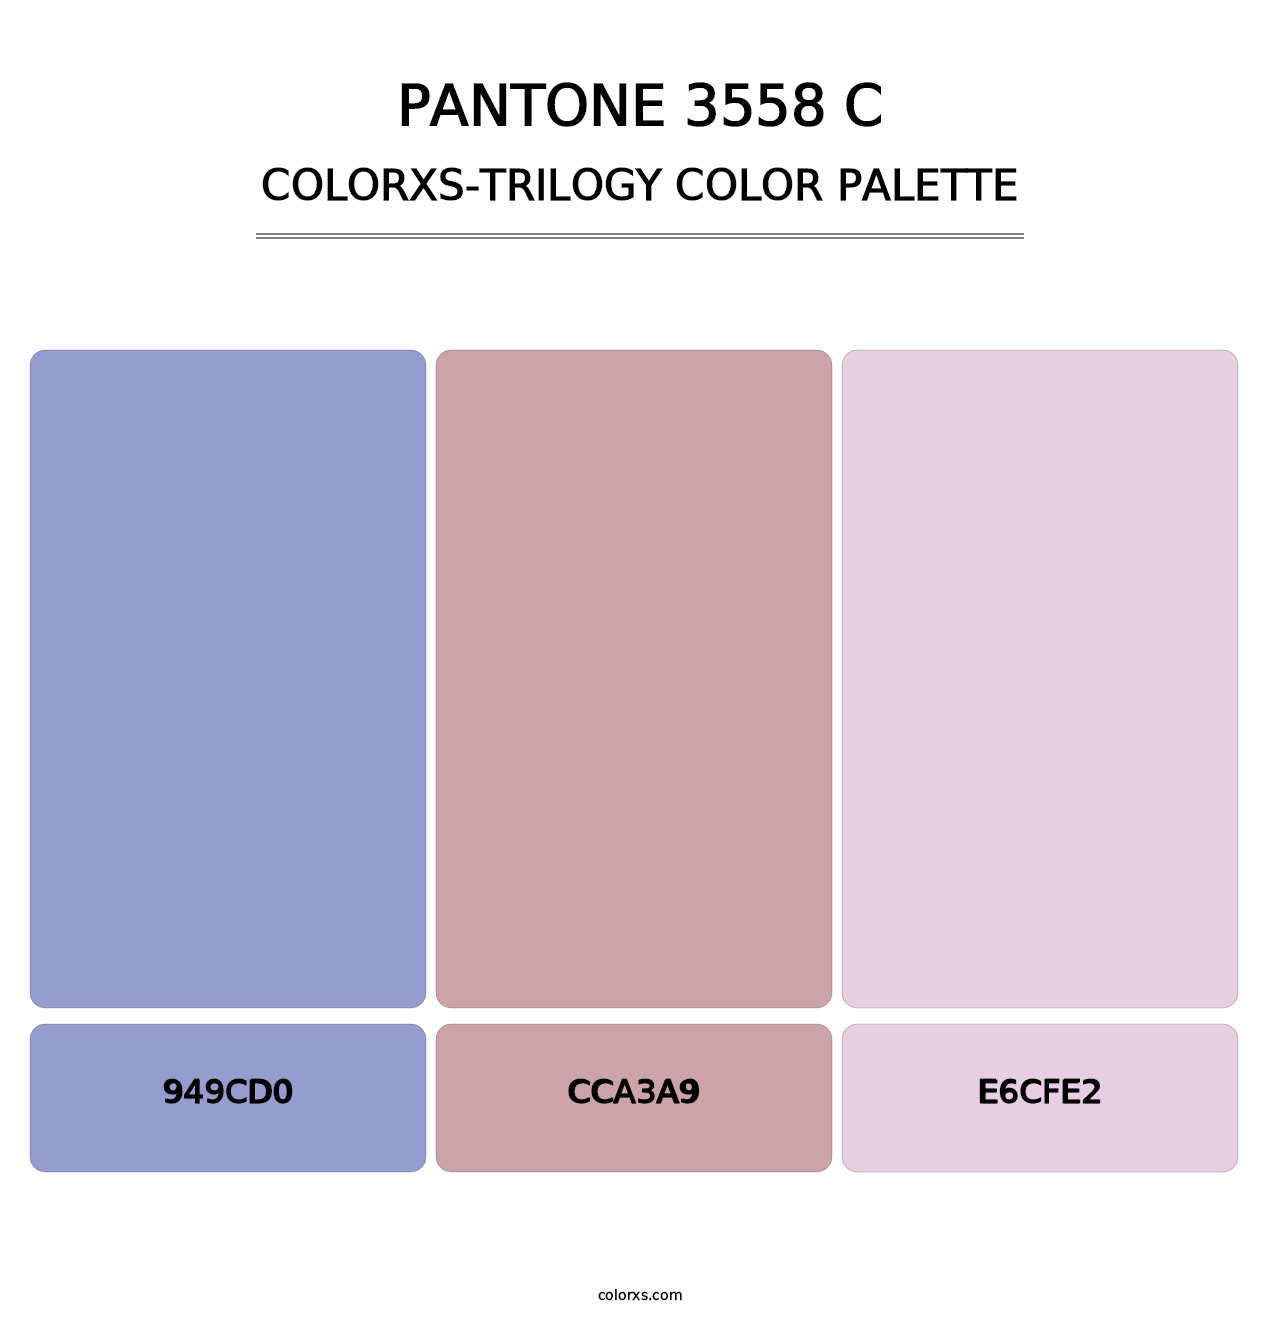 PANTONE 3558 C - Colorxs Trilogy Palette